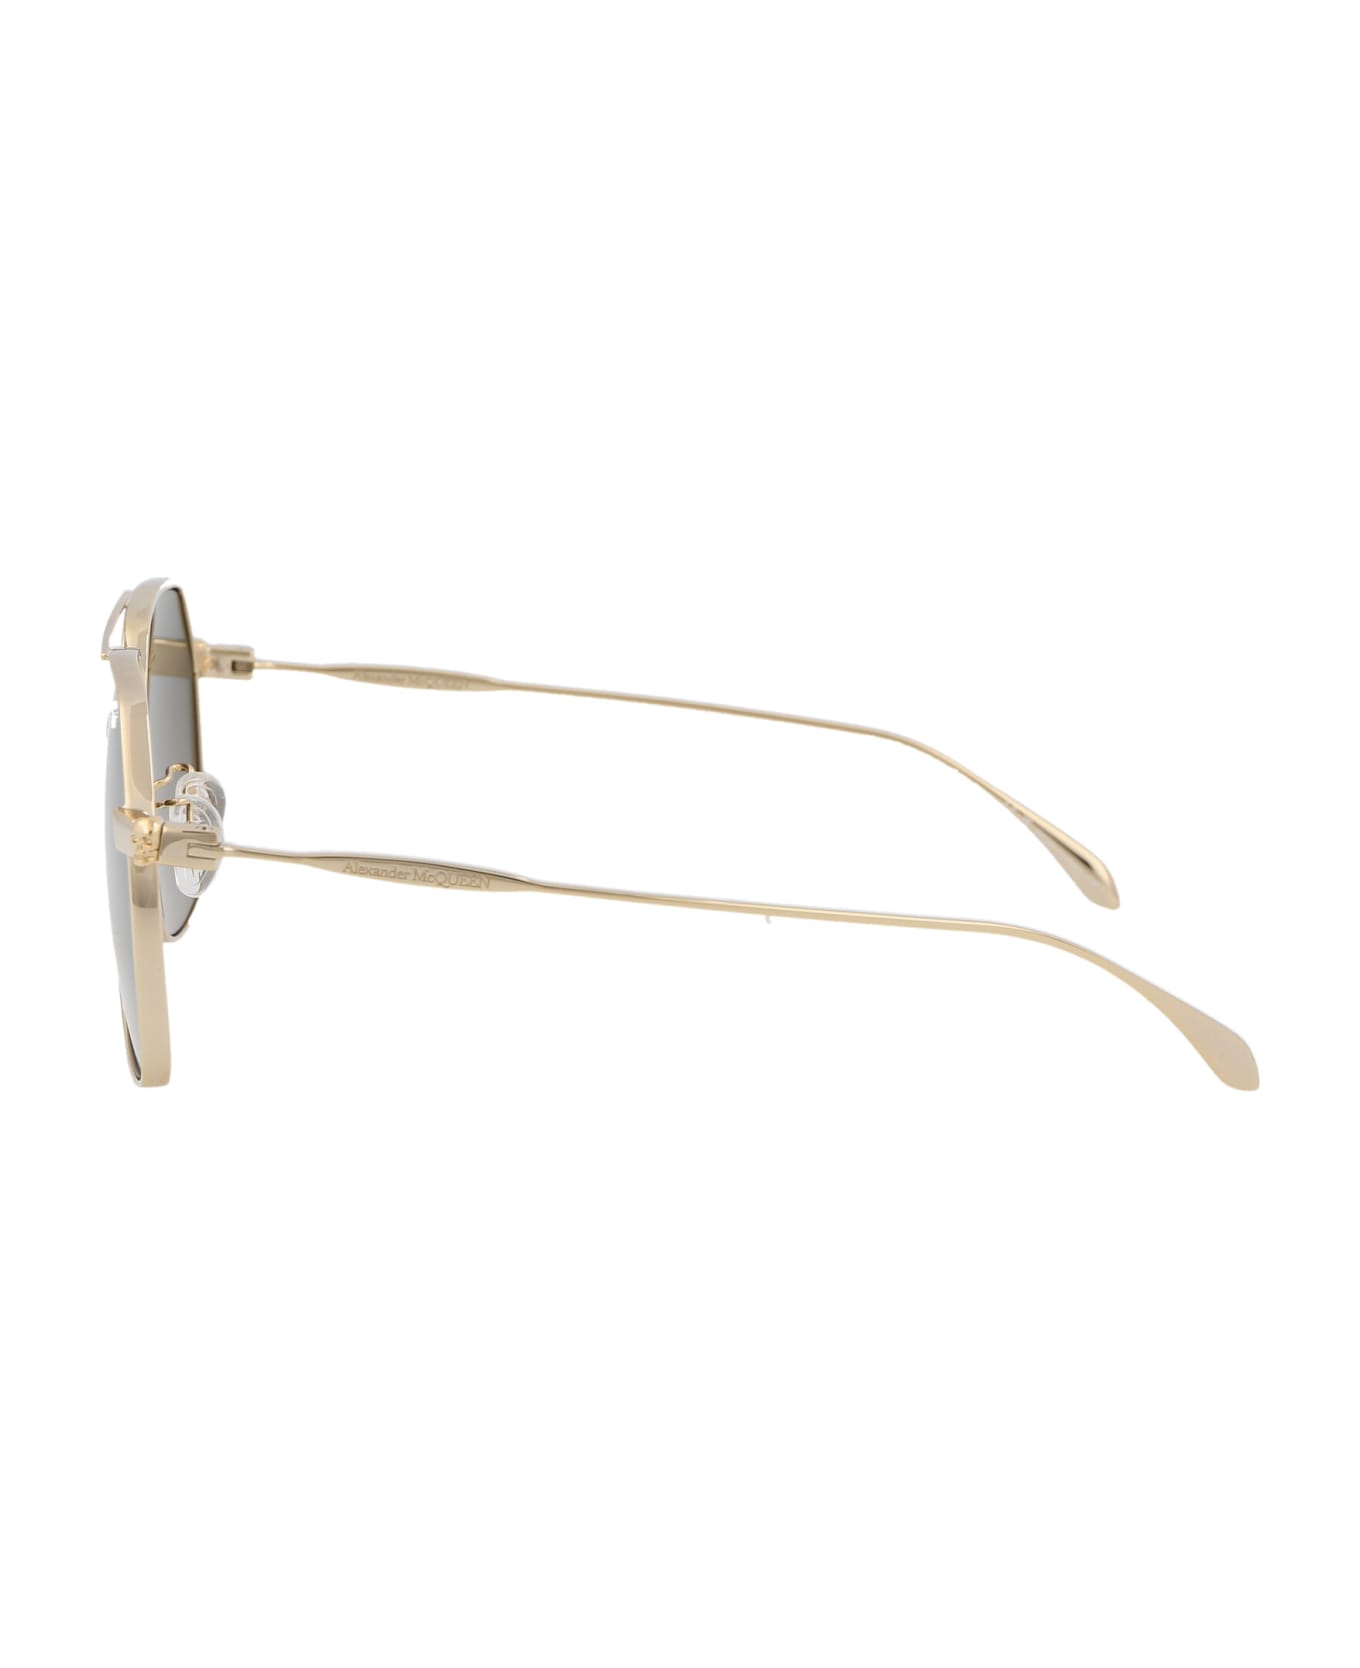 Alexander McQueen Eyewear Am0372s Sunglasses - 002 GOLD GOLD BROWN